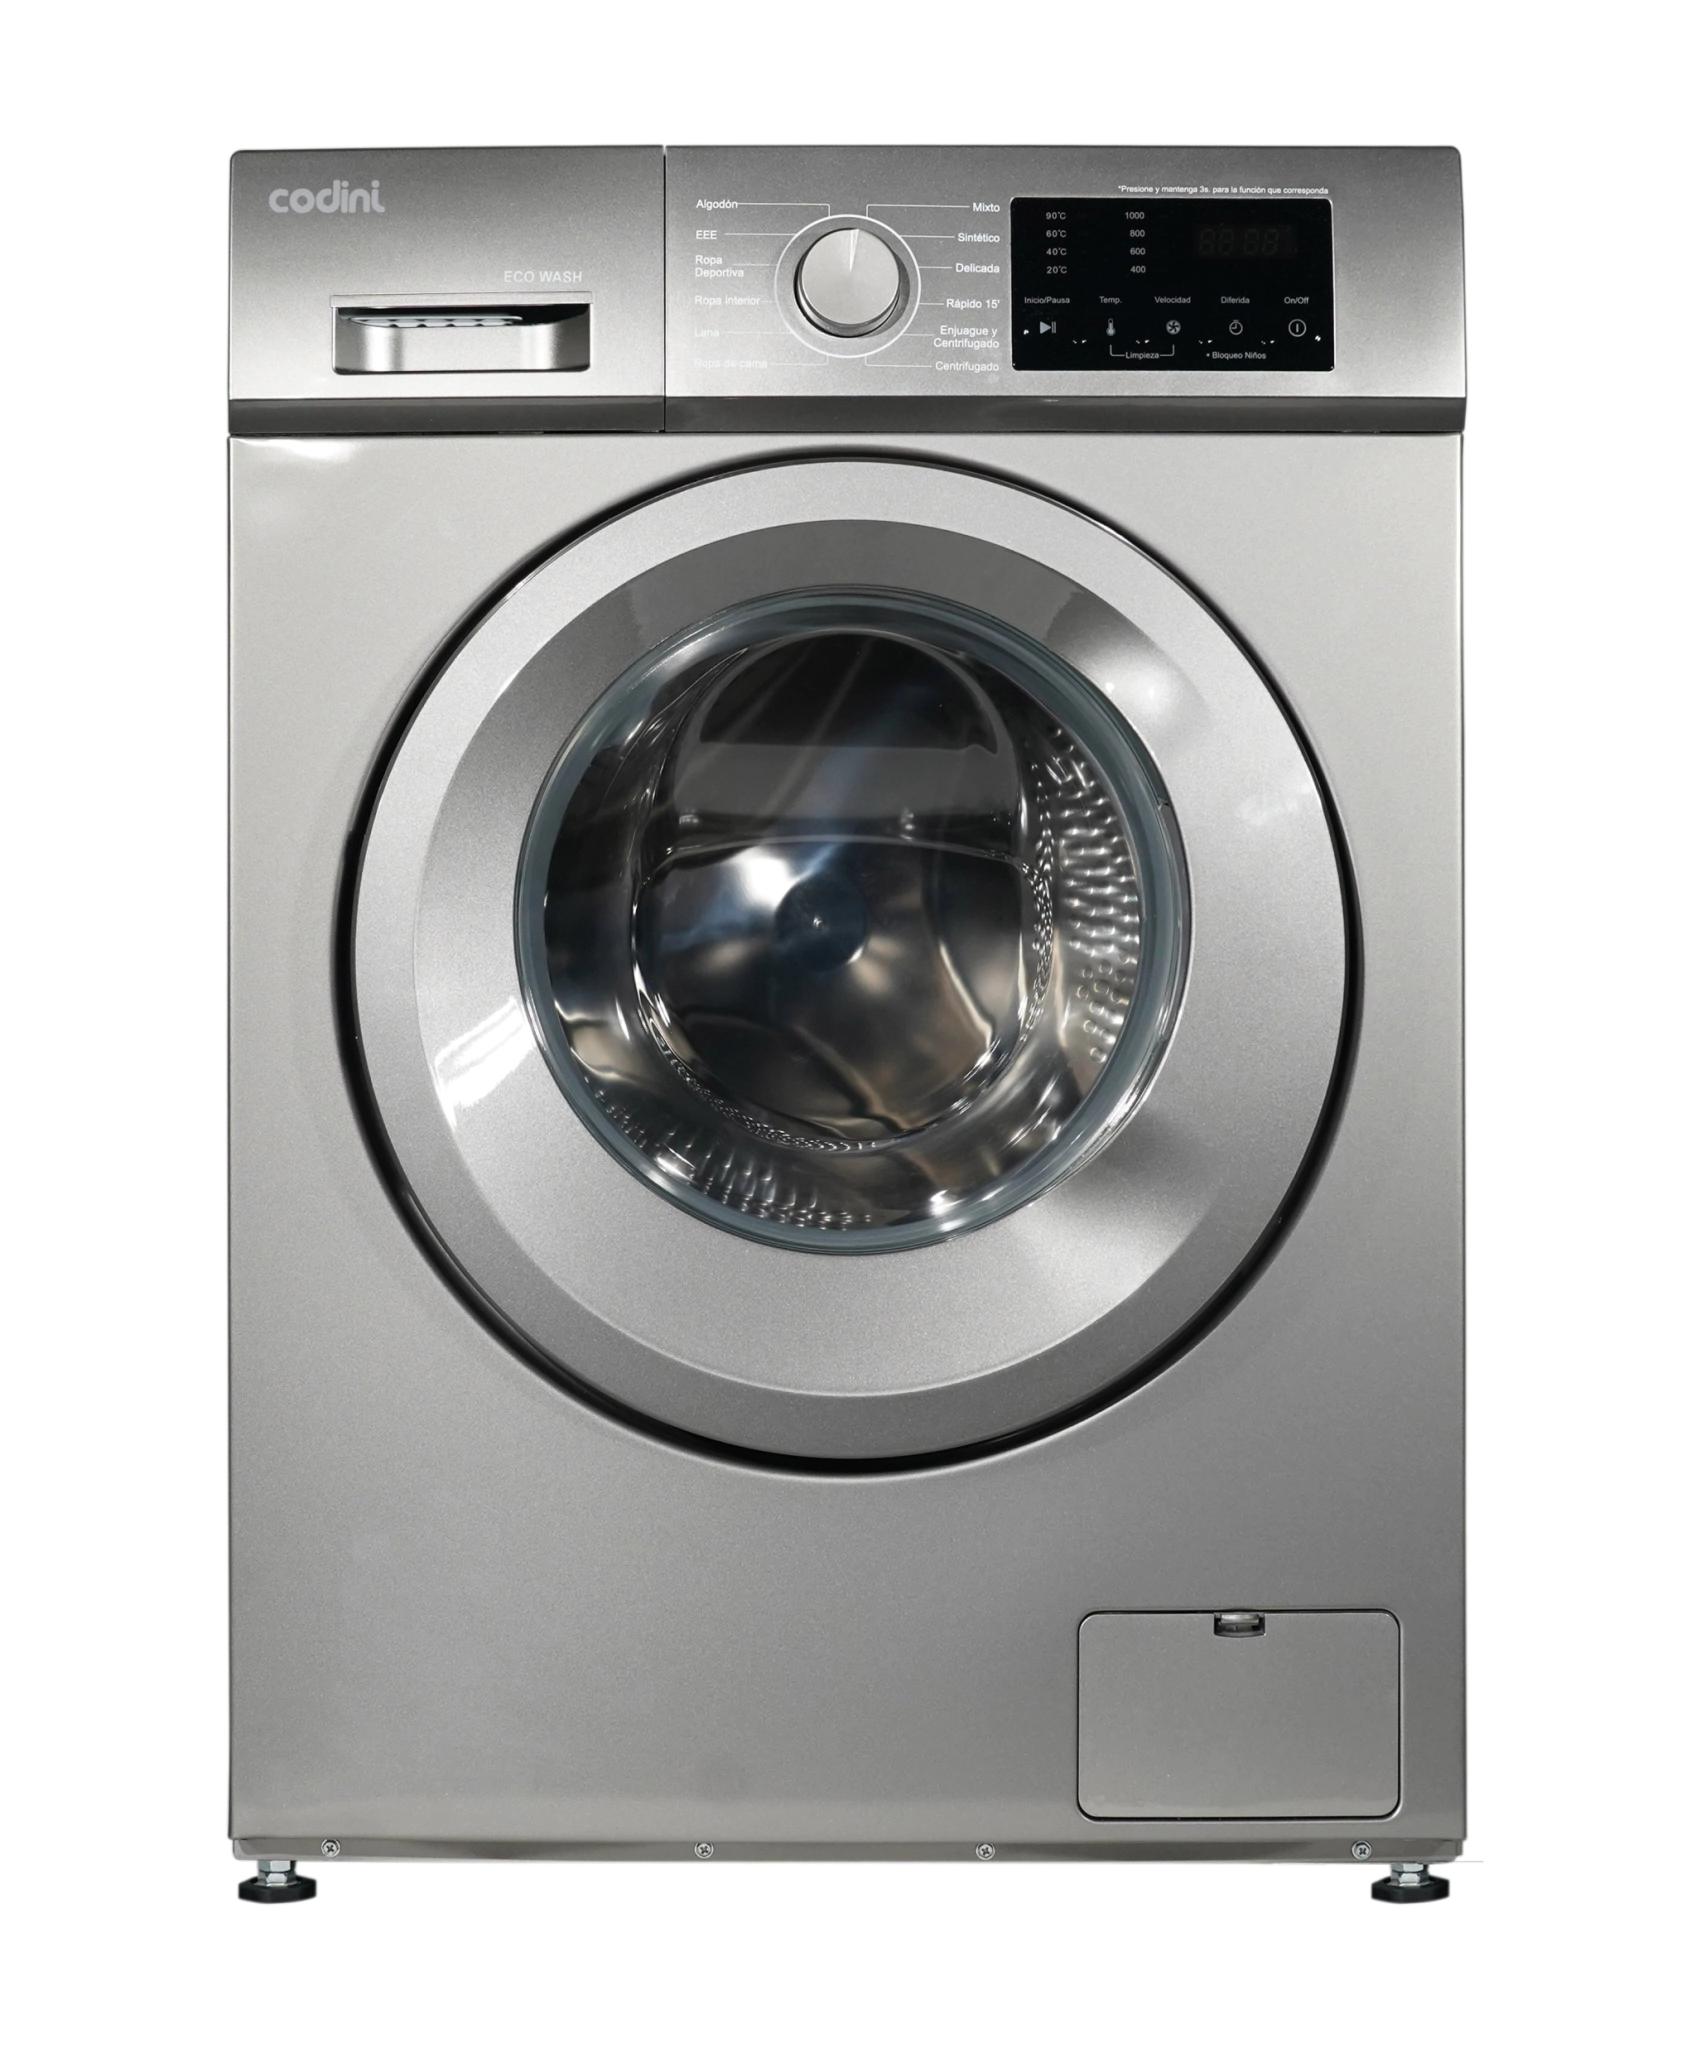 que es eco wash en lavarropas - Qué quiere decir Eco Clean